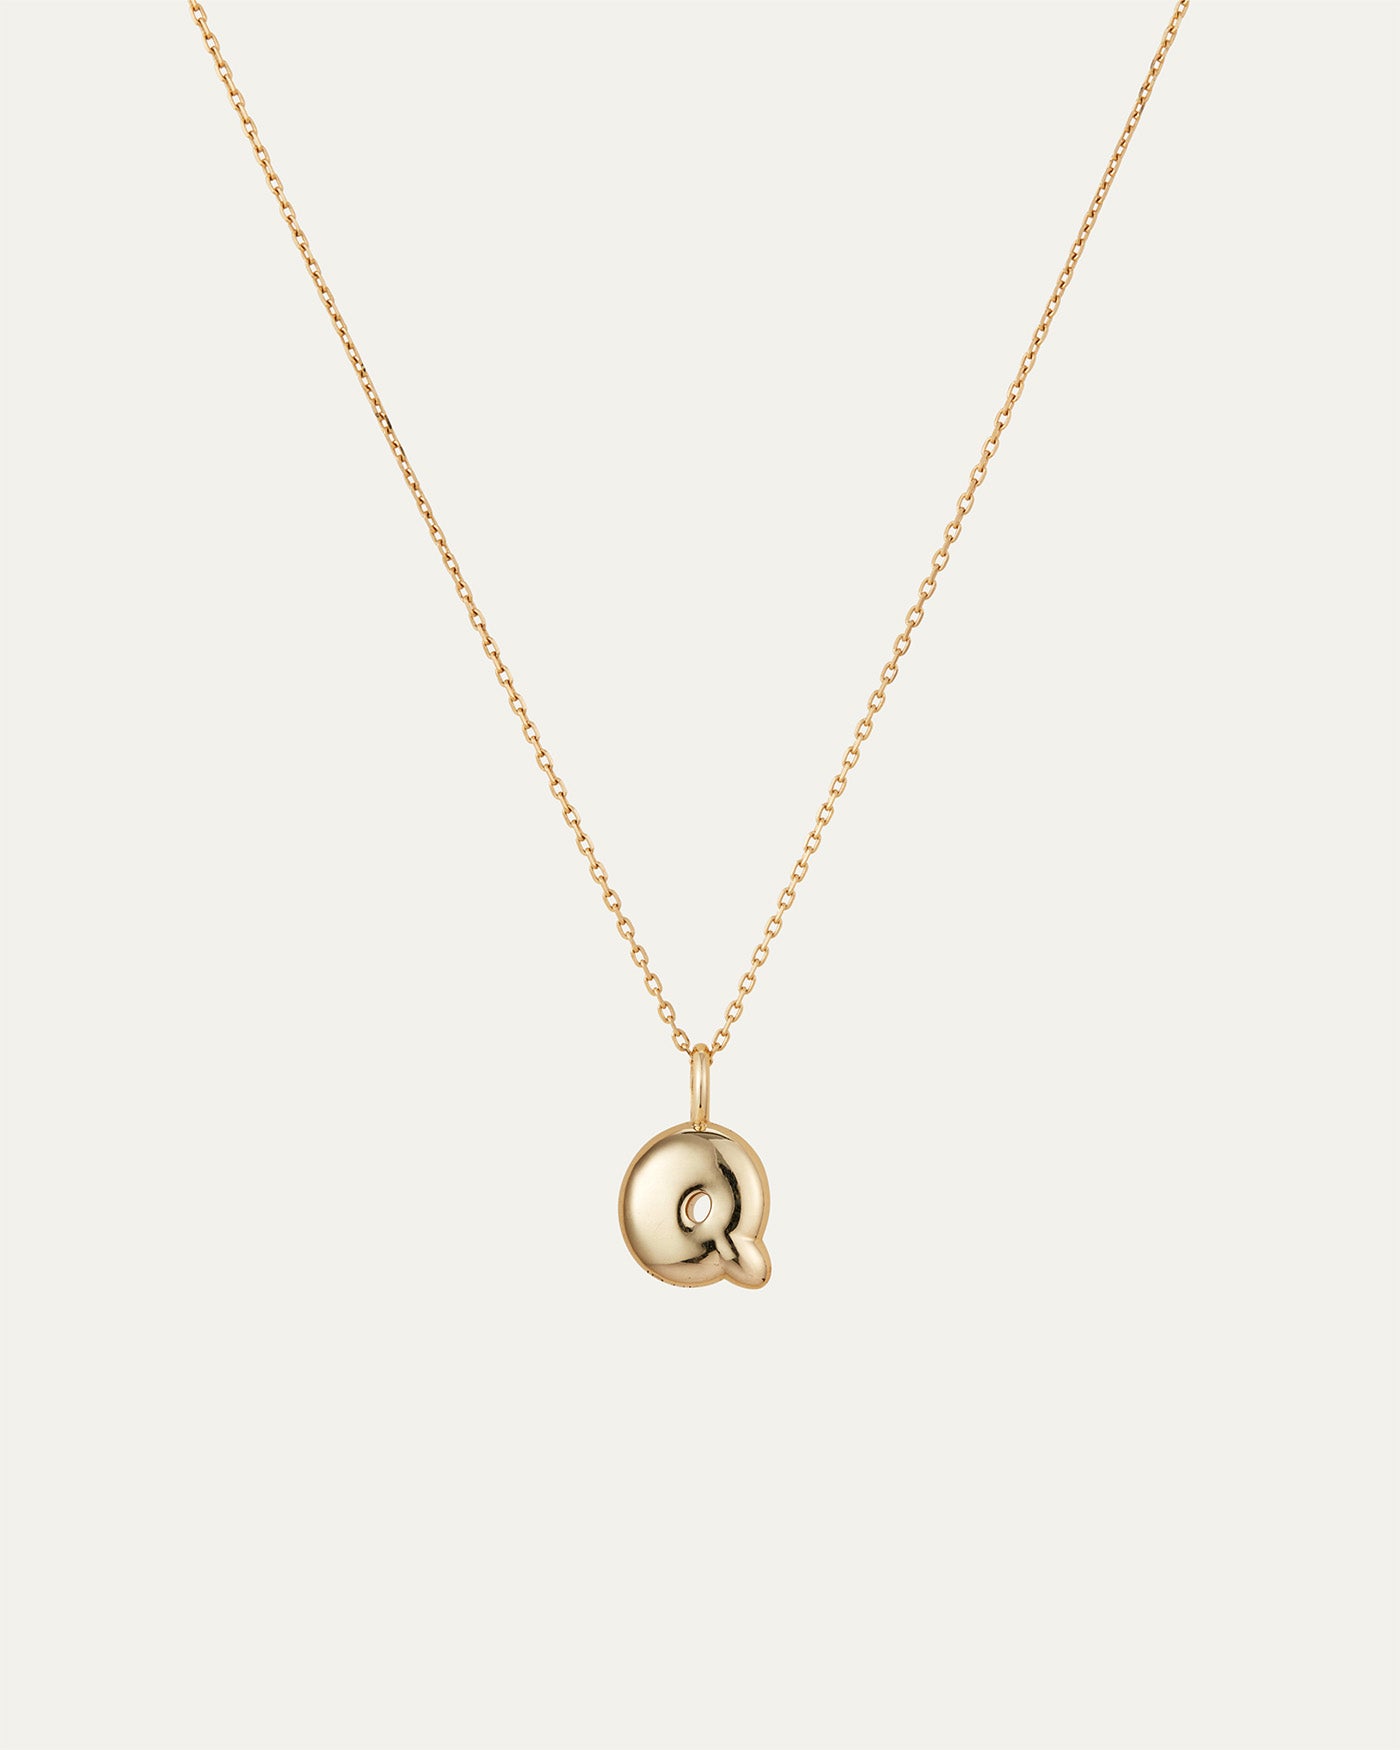 14K Gold Bubble Letter Necklace - Q